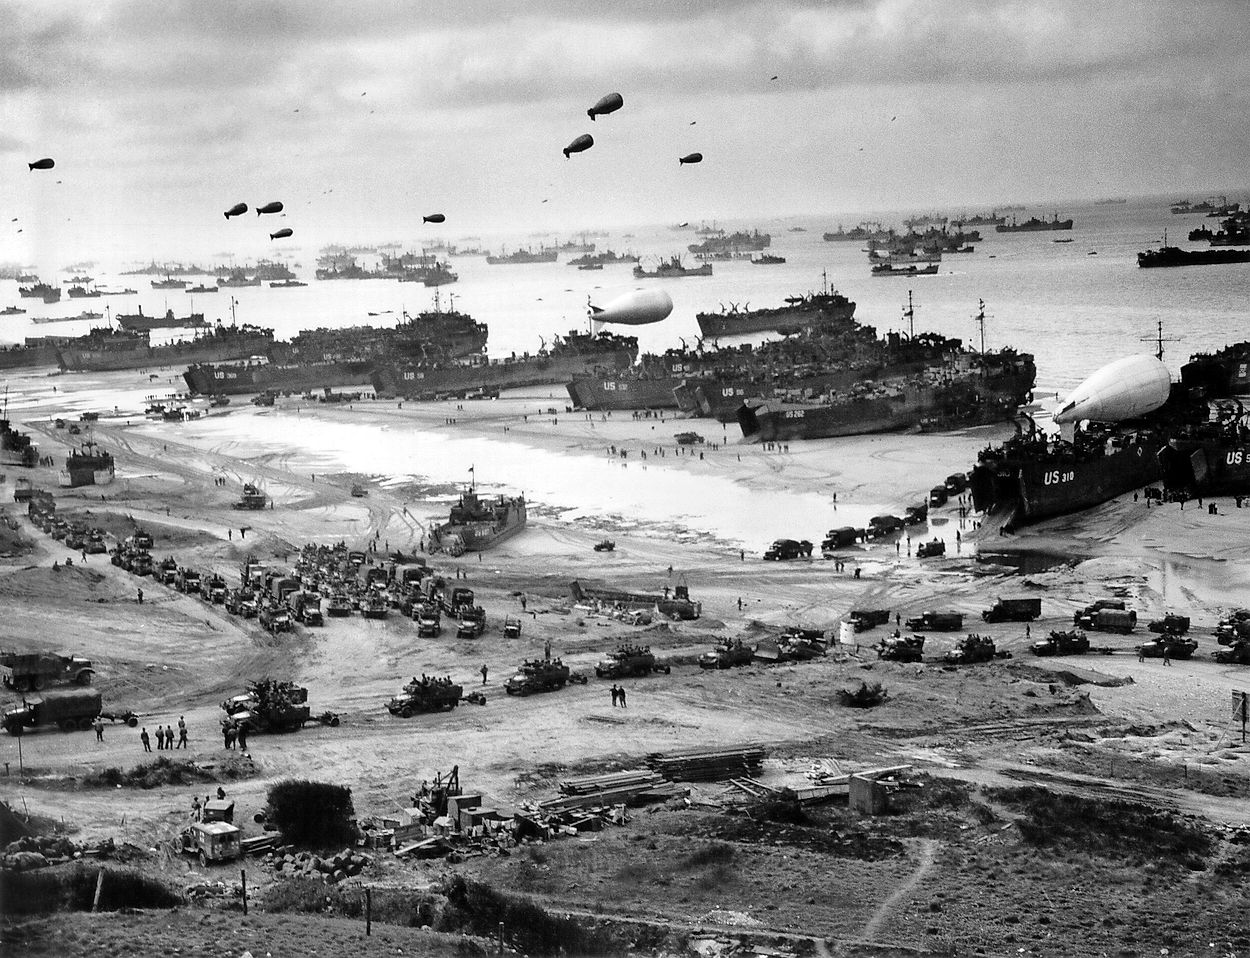 Z izkrcanjem zavezniških sil v Normandiji na dan D junija se je začelo zadnje obdobje